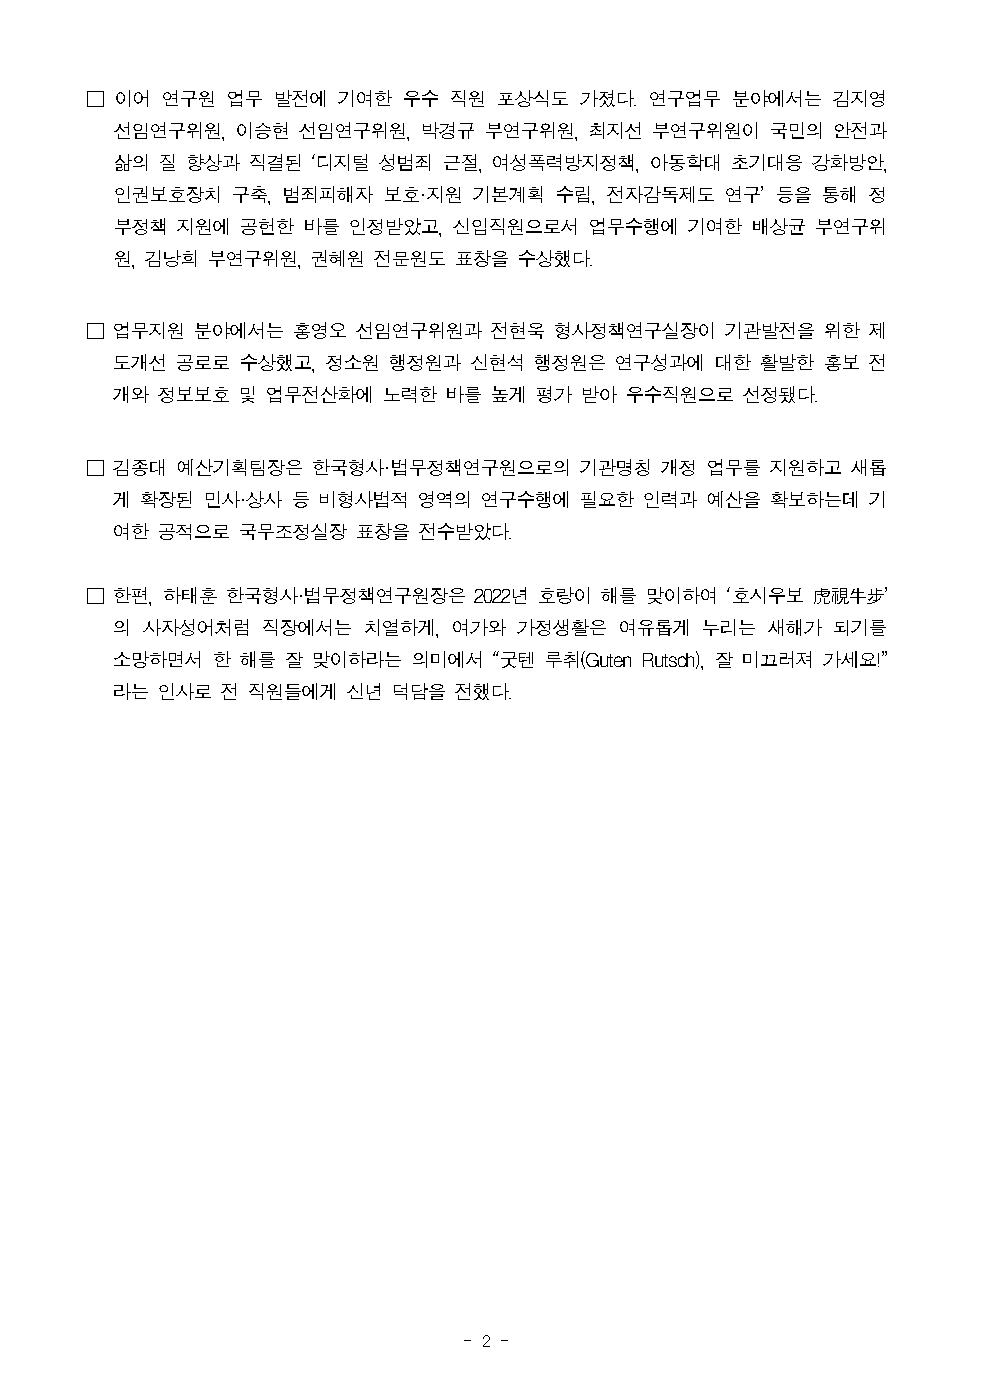 한국형사·법무정책연구원 보도자료 한국형사·법무정책연구원 2021년 종무식 개최 : 자세한 내용은 하단 pdf참조